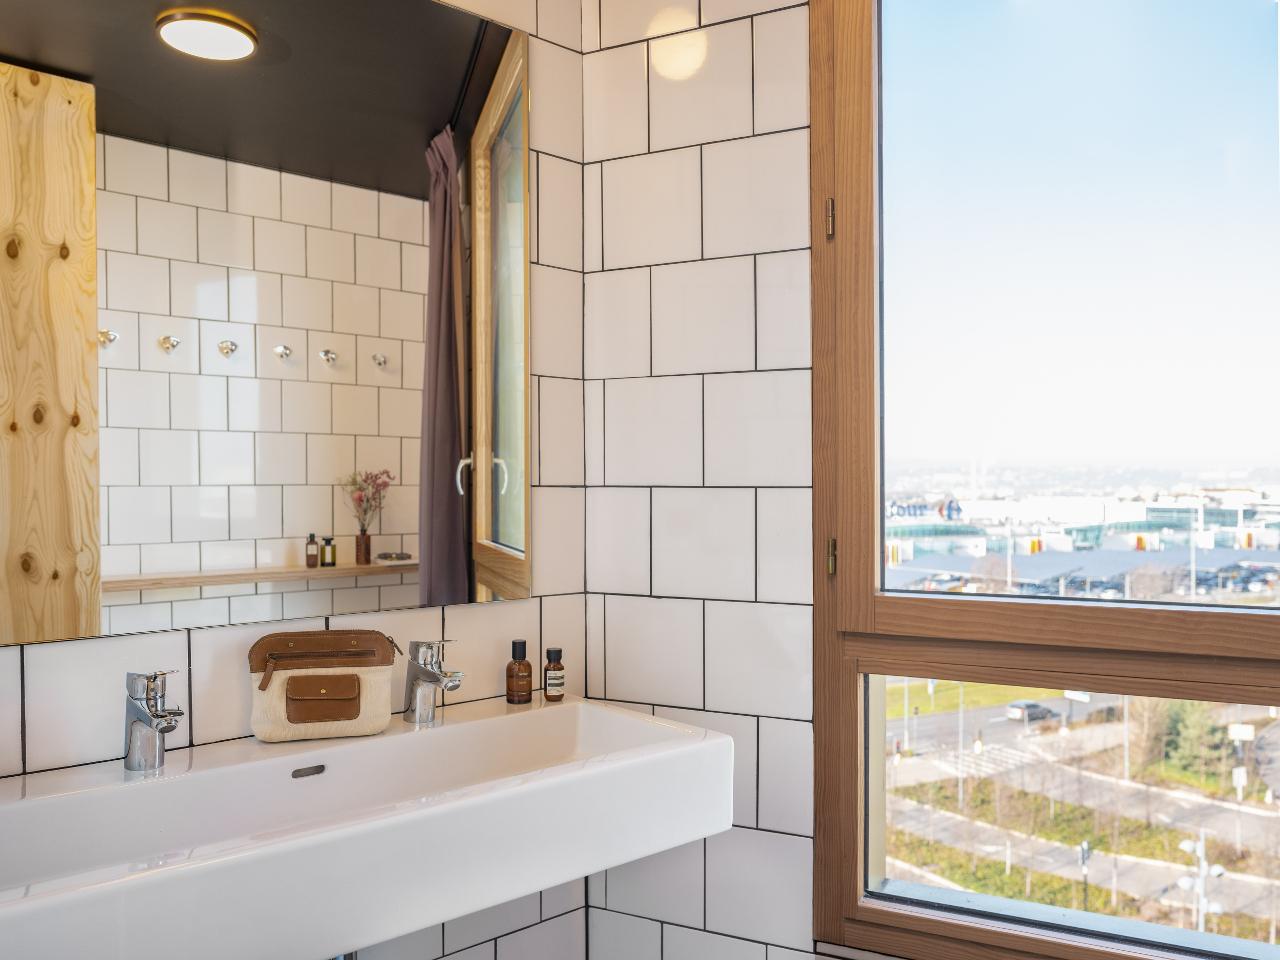 Logement GreenGo: EkloLit dans dortoir femme uniquement avec salle de bain privative - Image 4